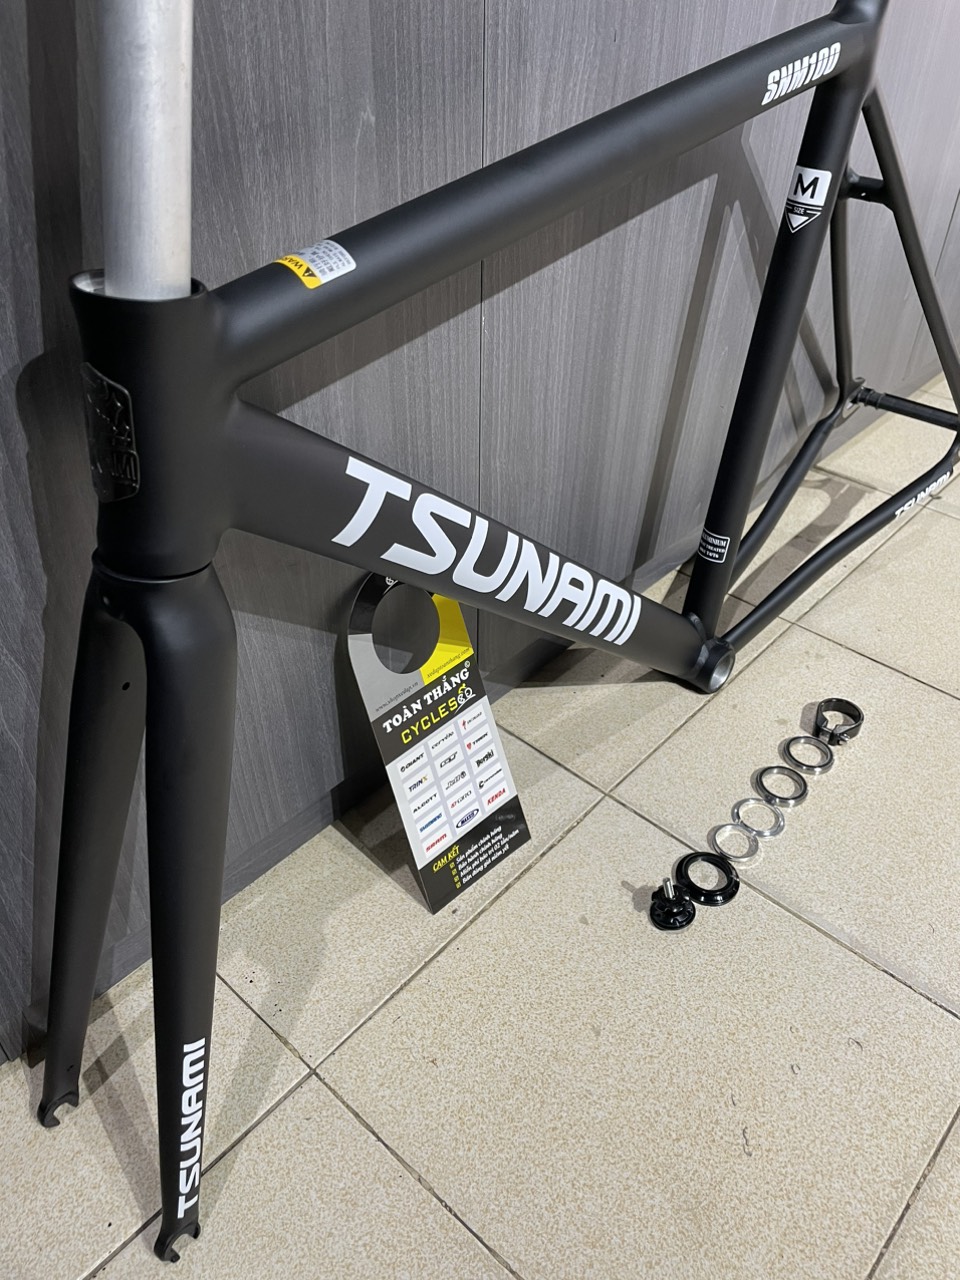 Khung sườn xe đạp Fixed Gear Tsunami SNM100 Black